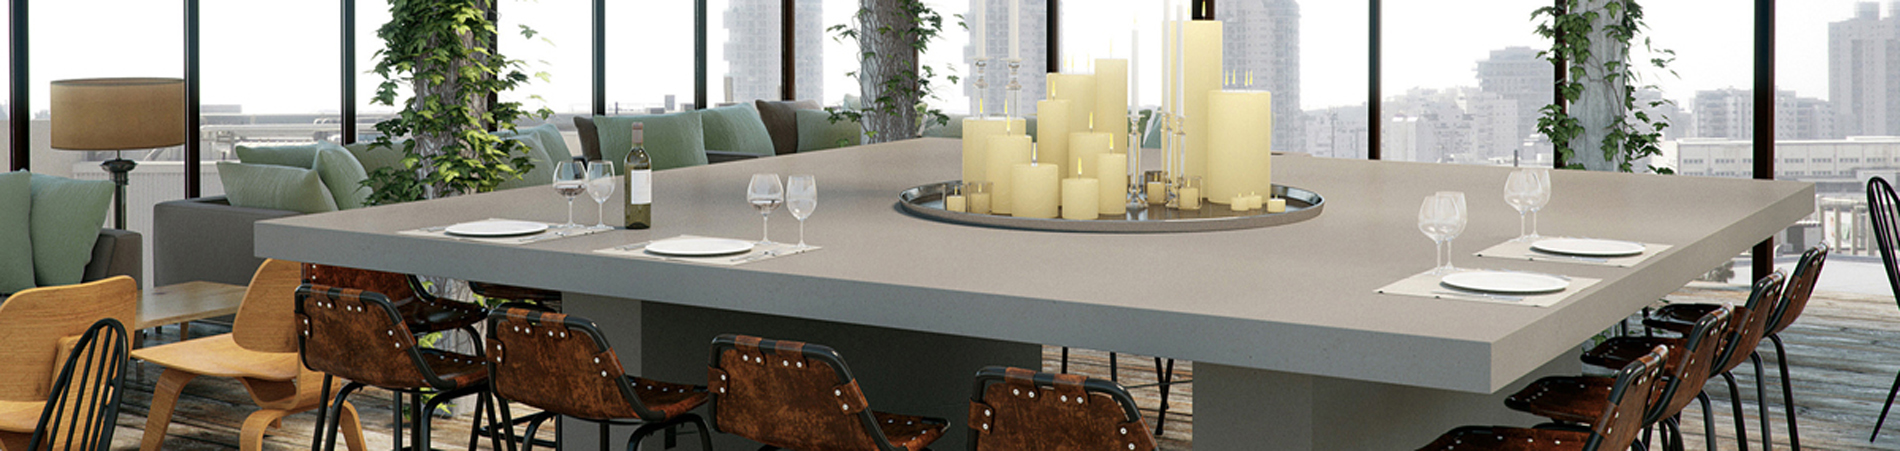 Tischplatten nach Maß - Tischplatte für Ihren Tisch nach Maß gefertigt